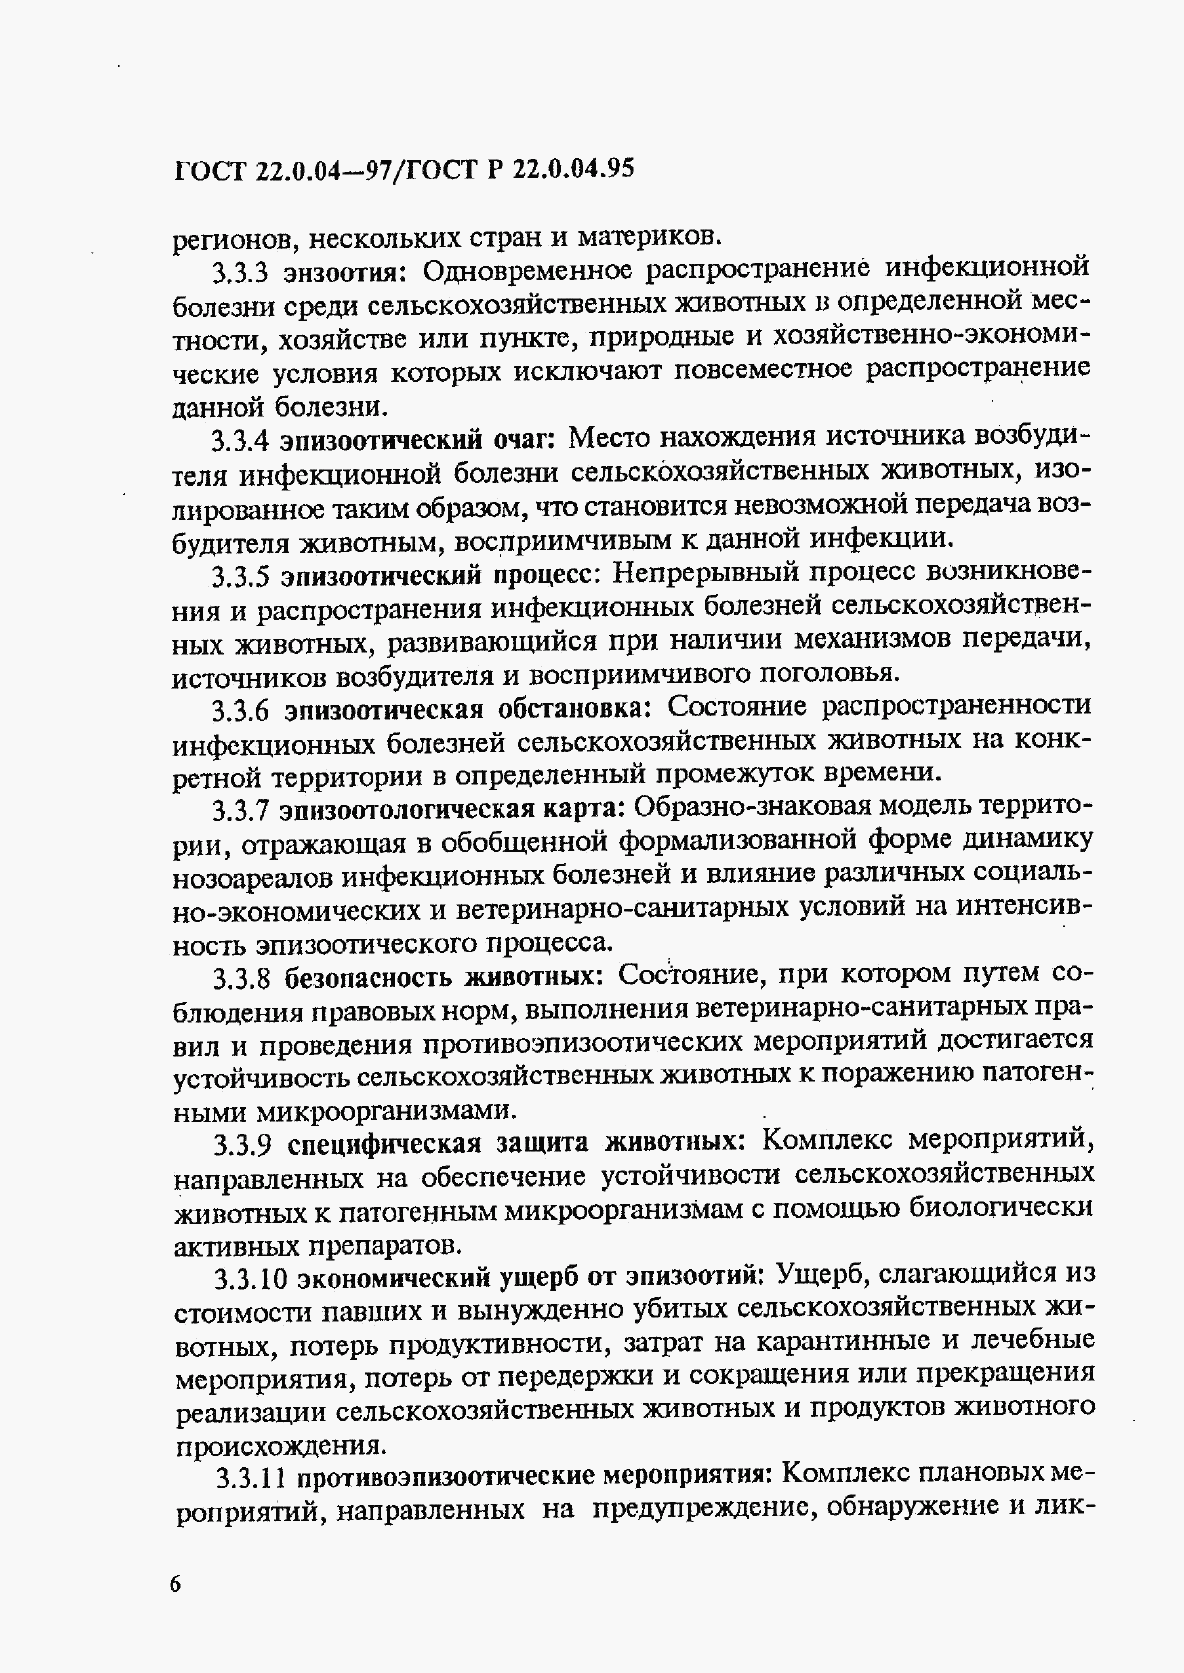 ГОСТ 22.0.04-97, страница 10